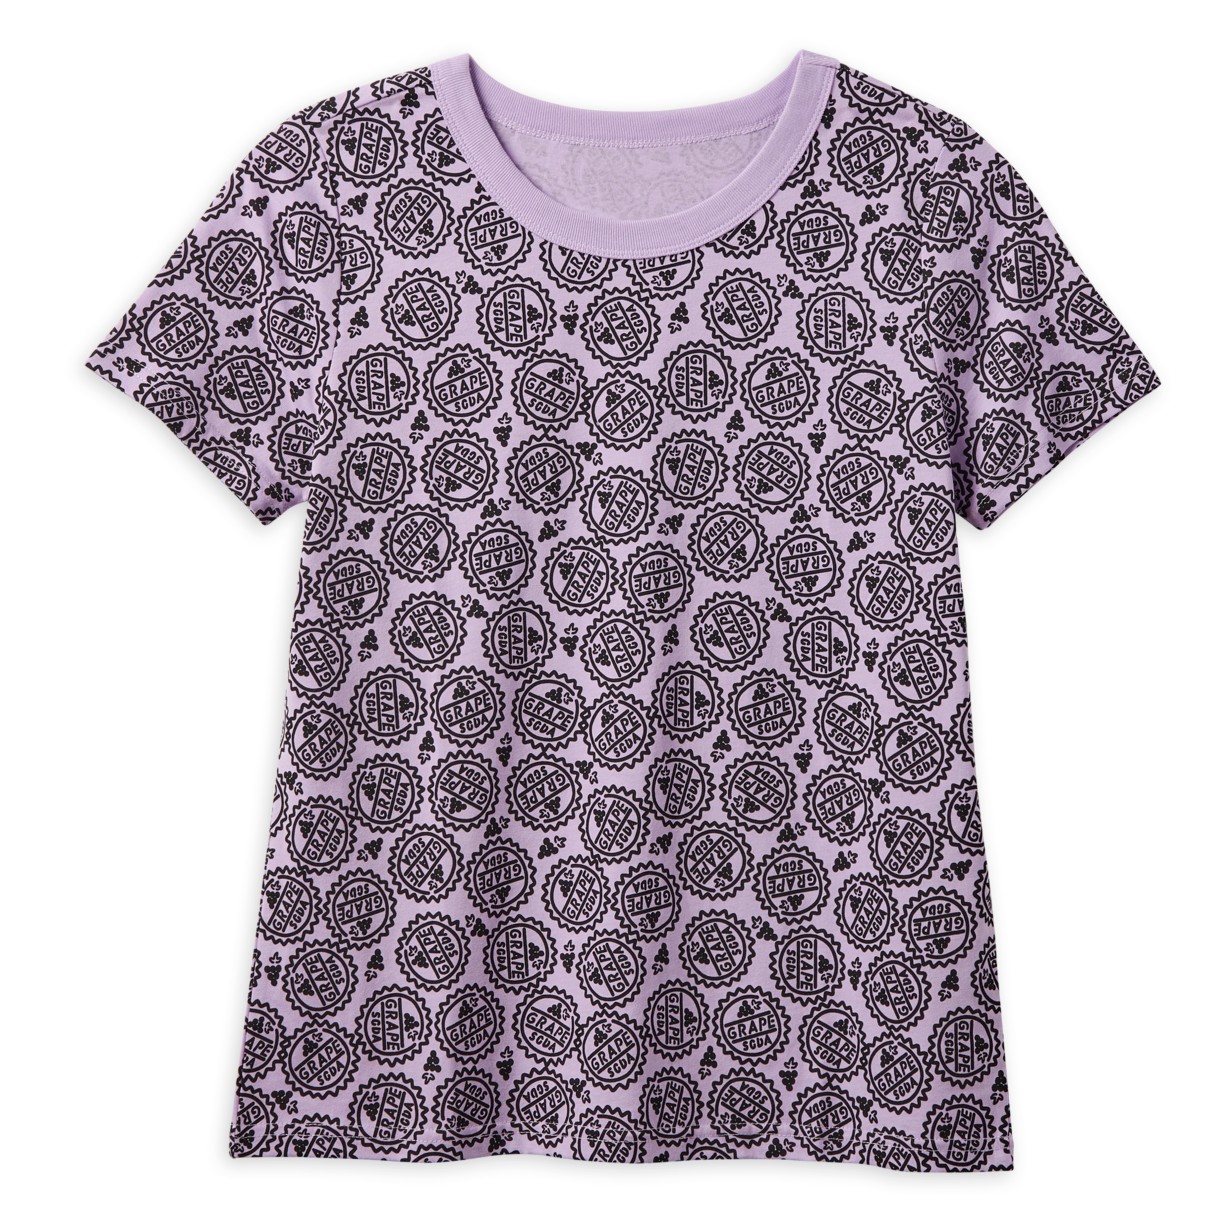 Grape Soda Cap Fashion T-Shirt for Women – Up